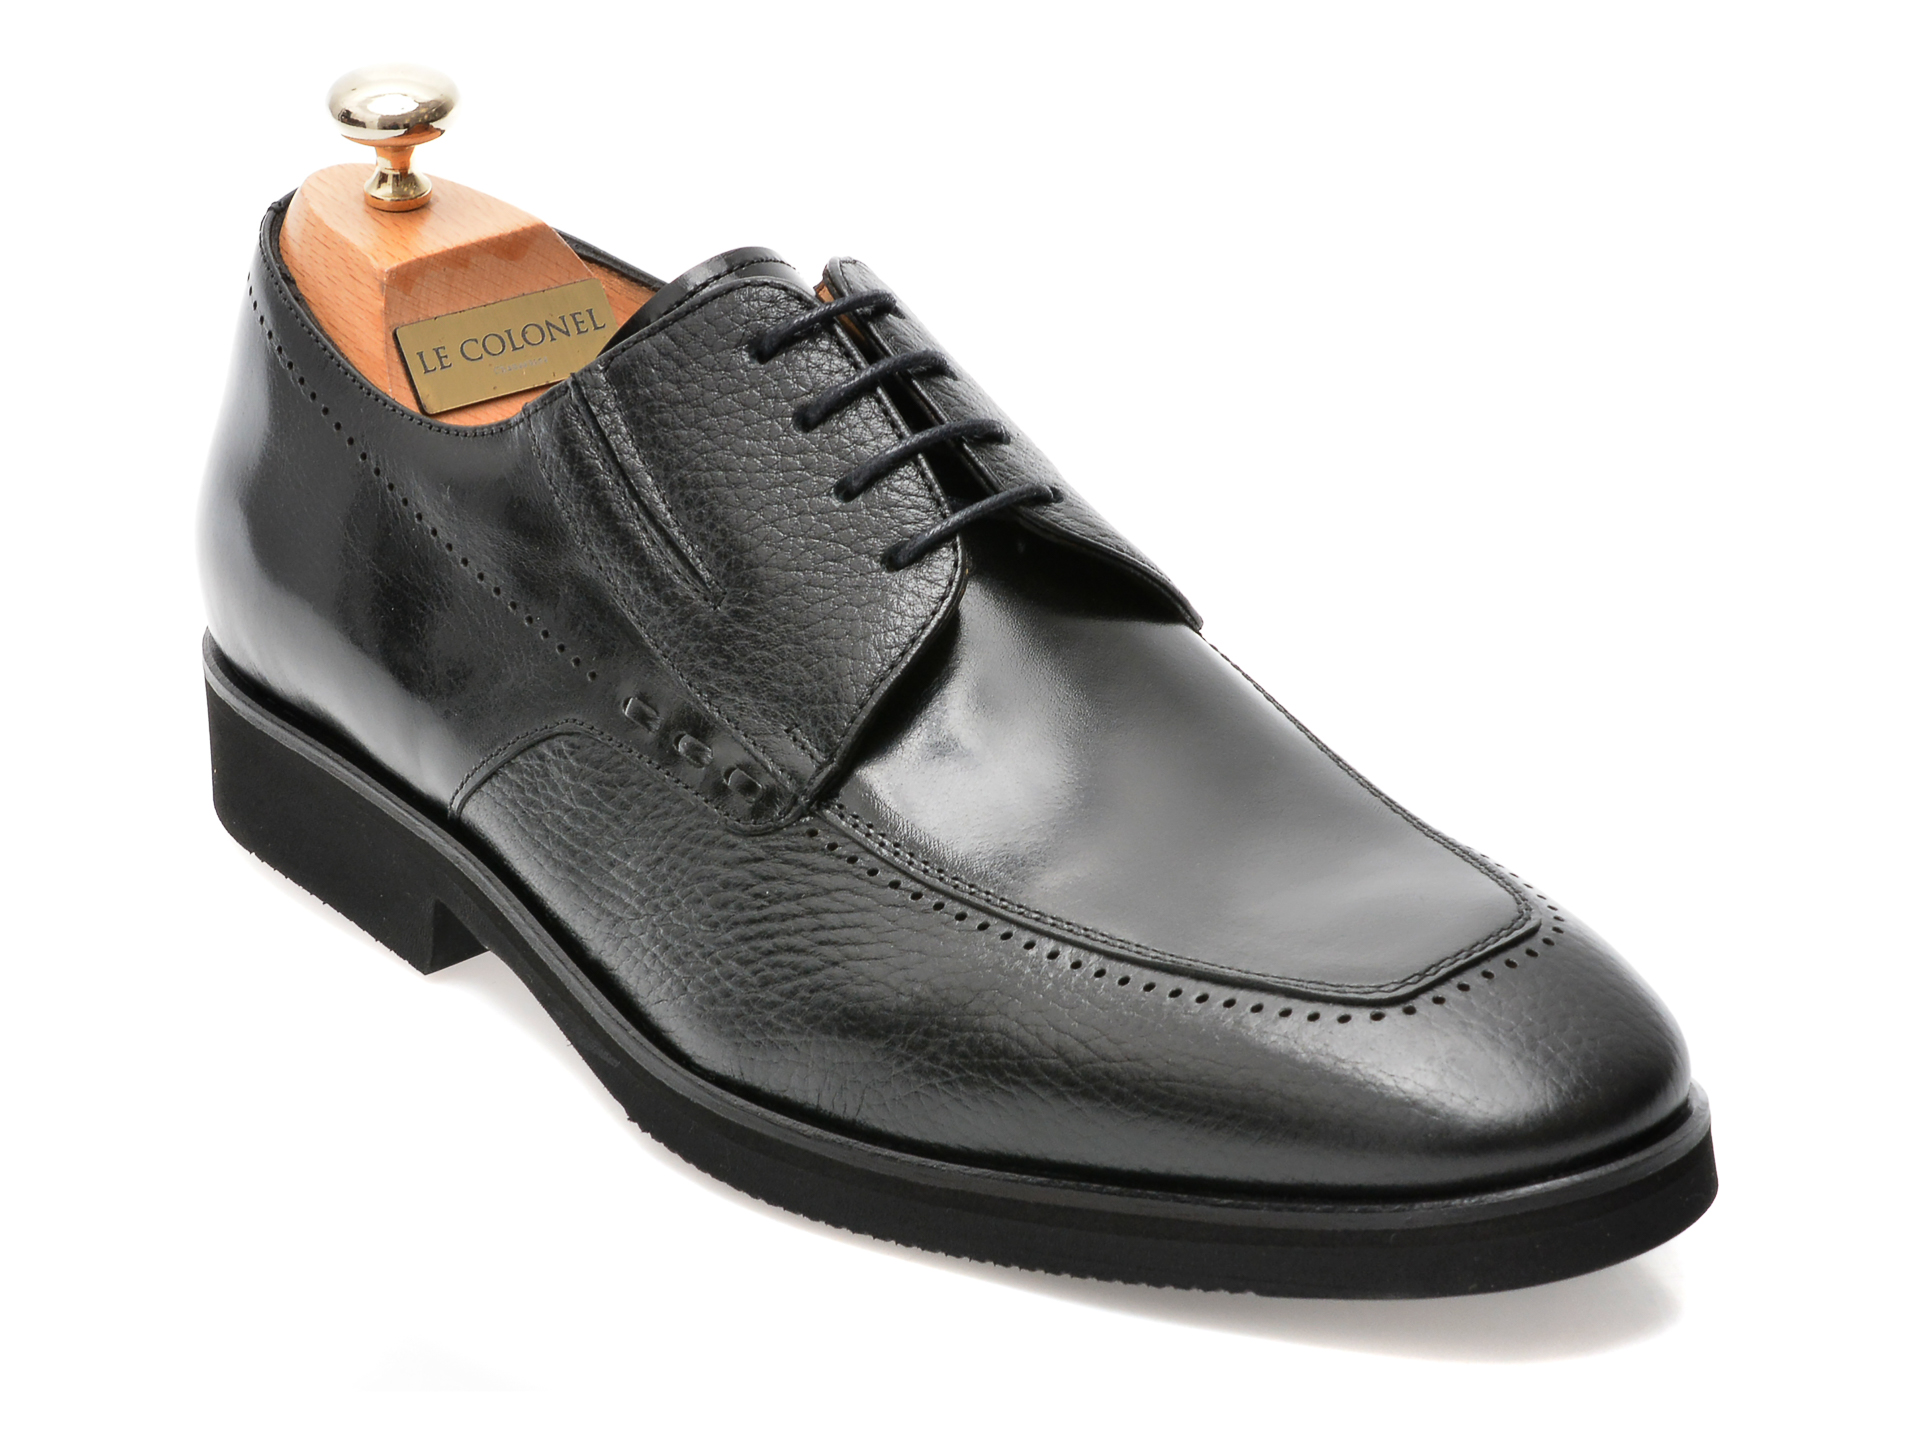 Pantofi LE COLONEL negri, 48701, din piele naturala barbati 2023-03-24